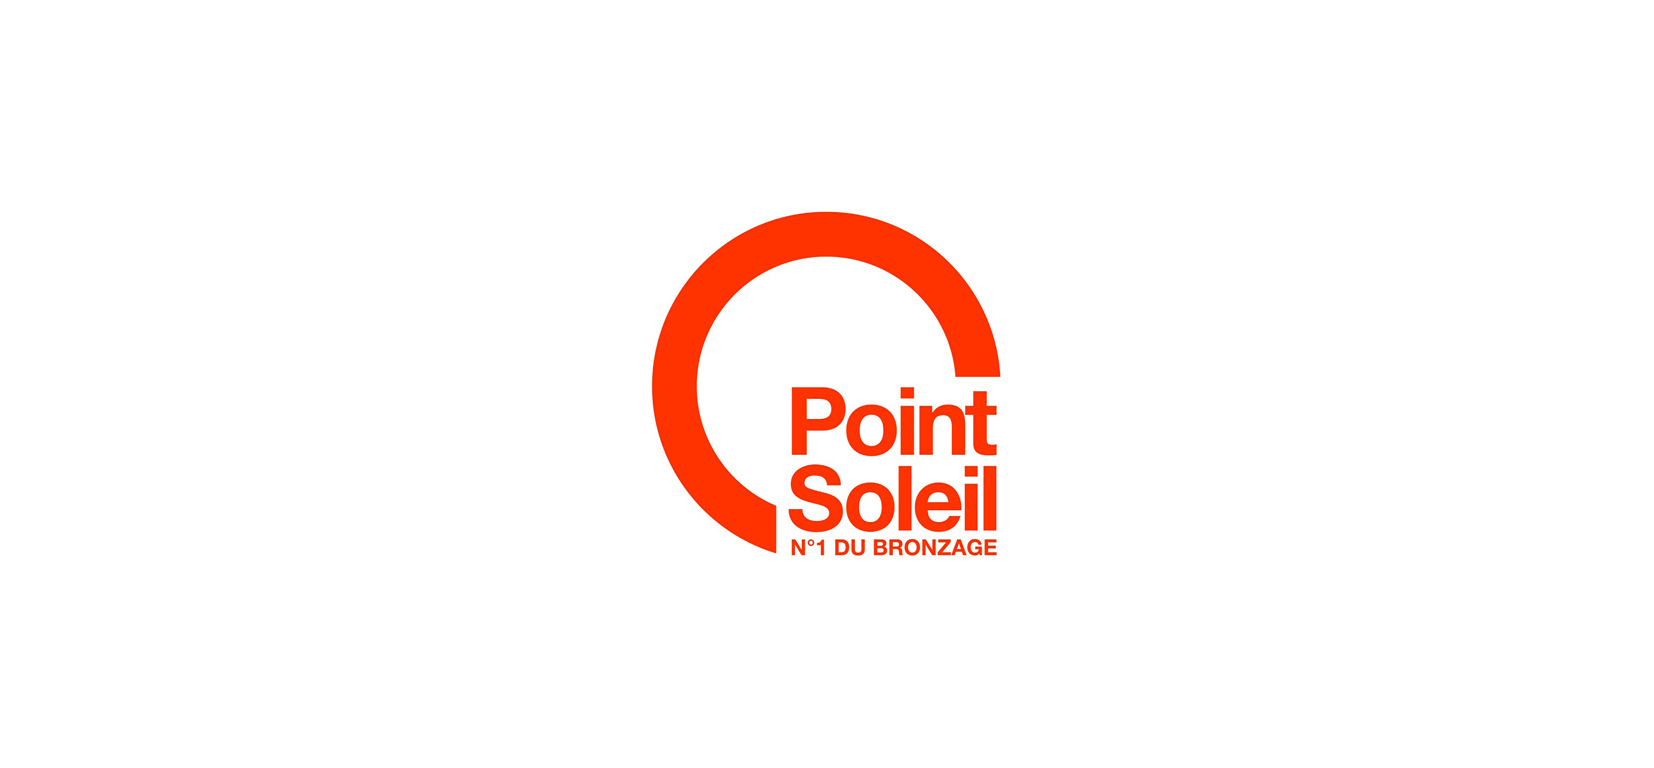 Point Soleil